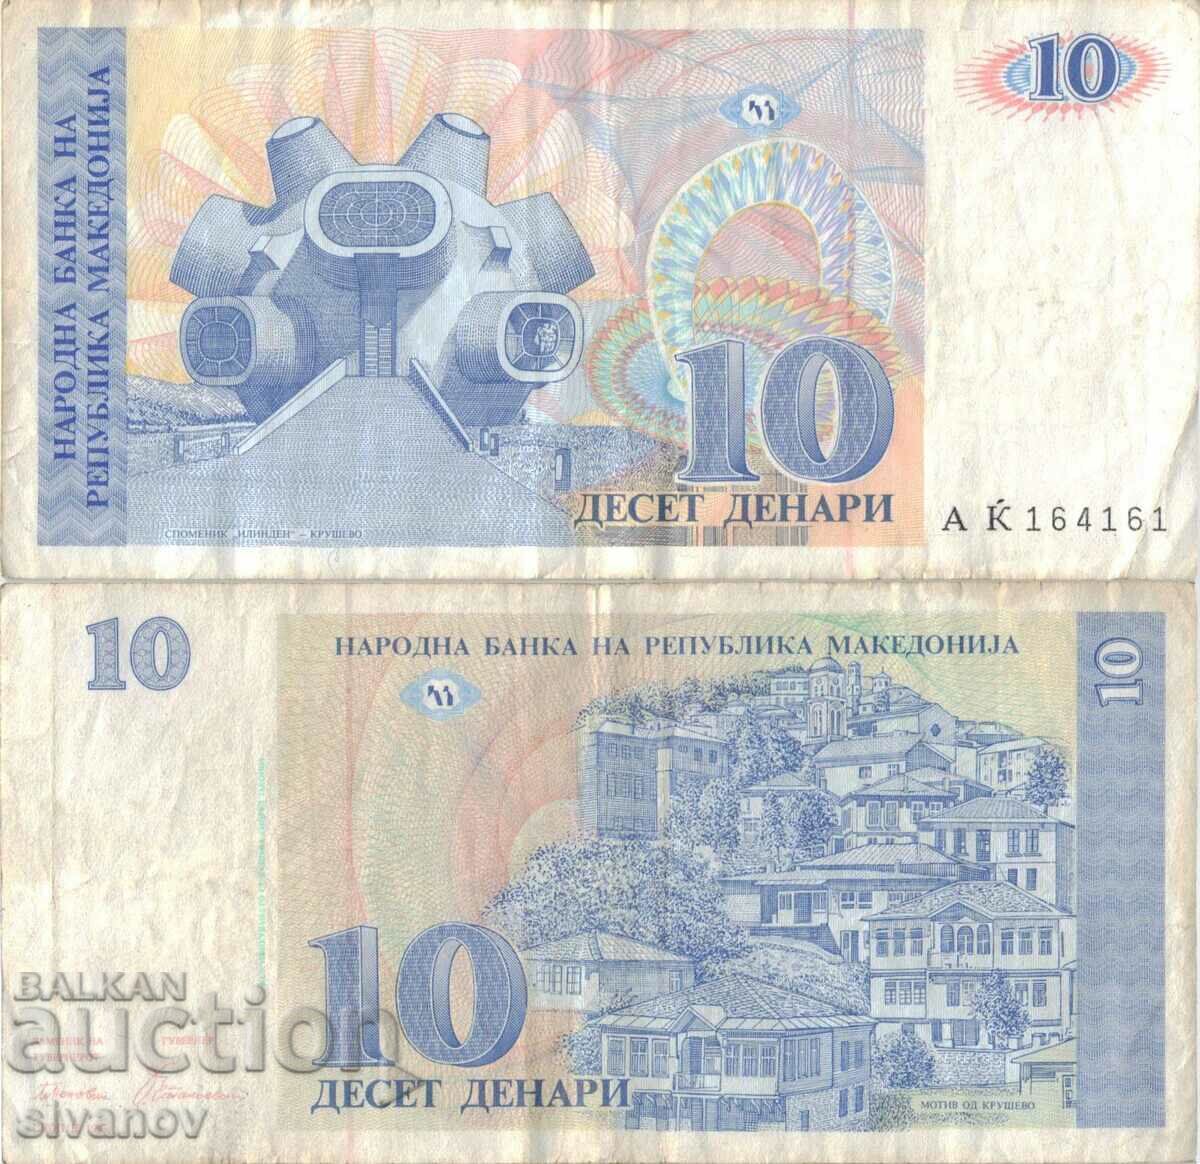 Macedonia 10 denars 1993 banknote #5214